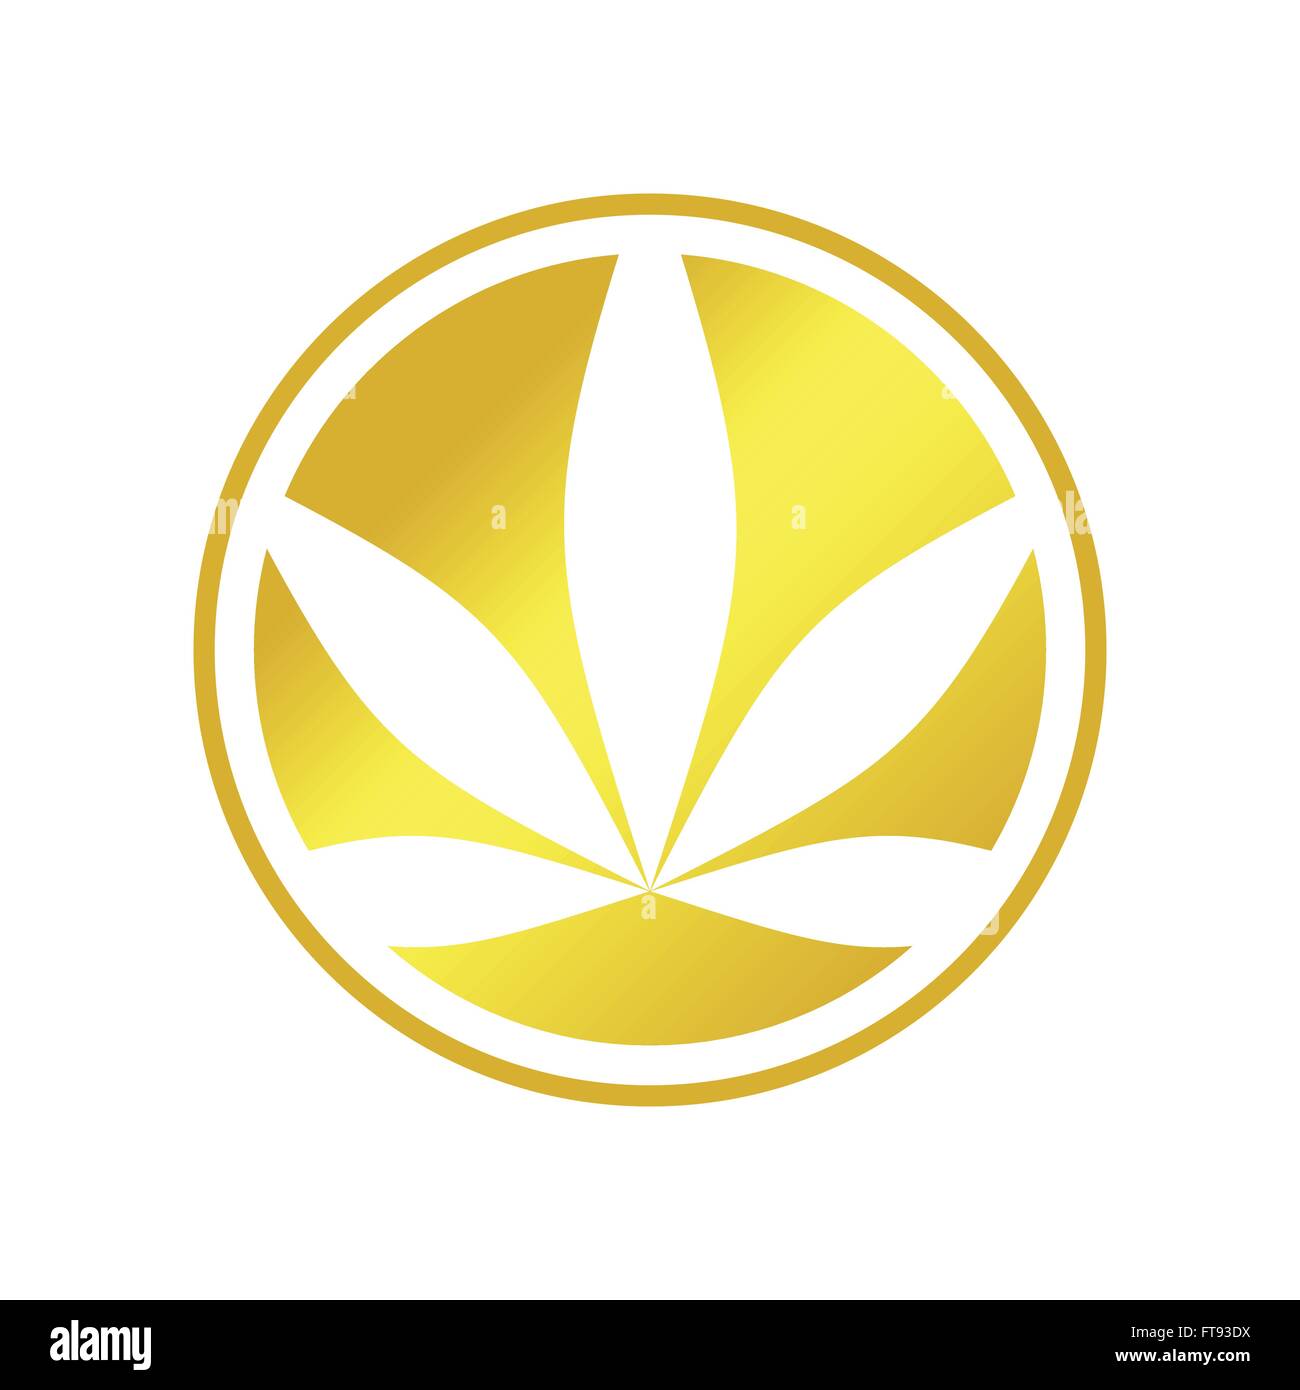 Golden Circle Cannabis Stock Vector